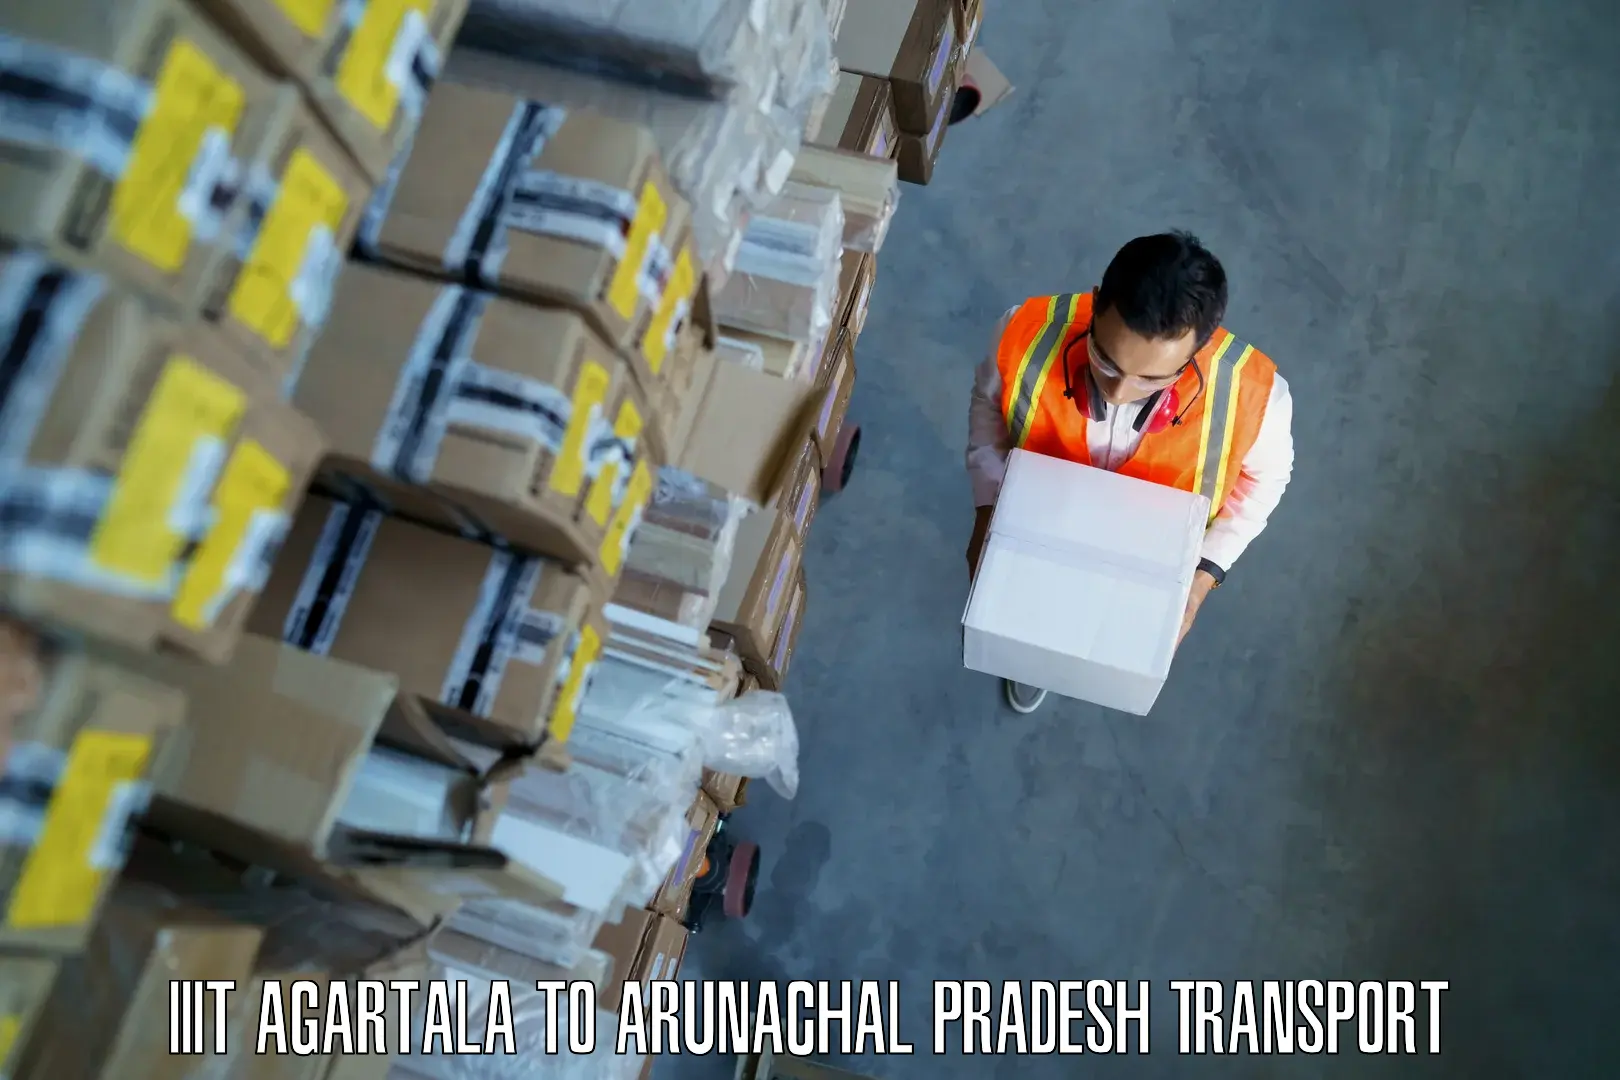 All India transport service IIIT Agartala to Tirap